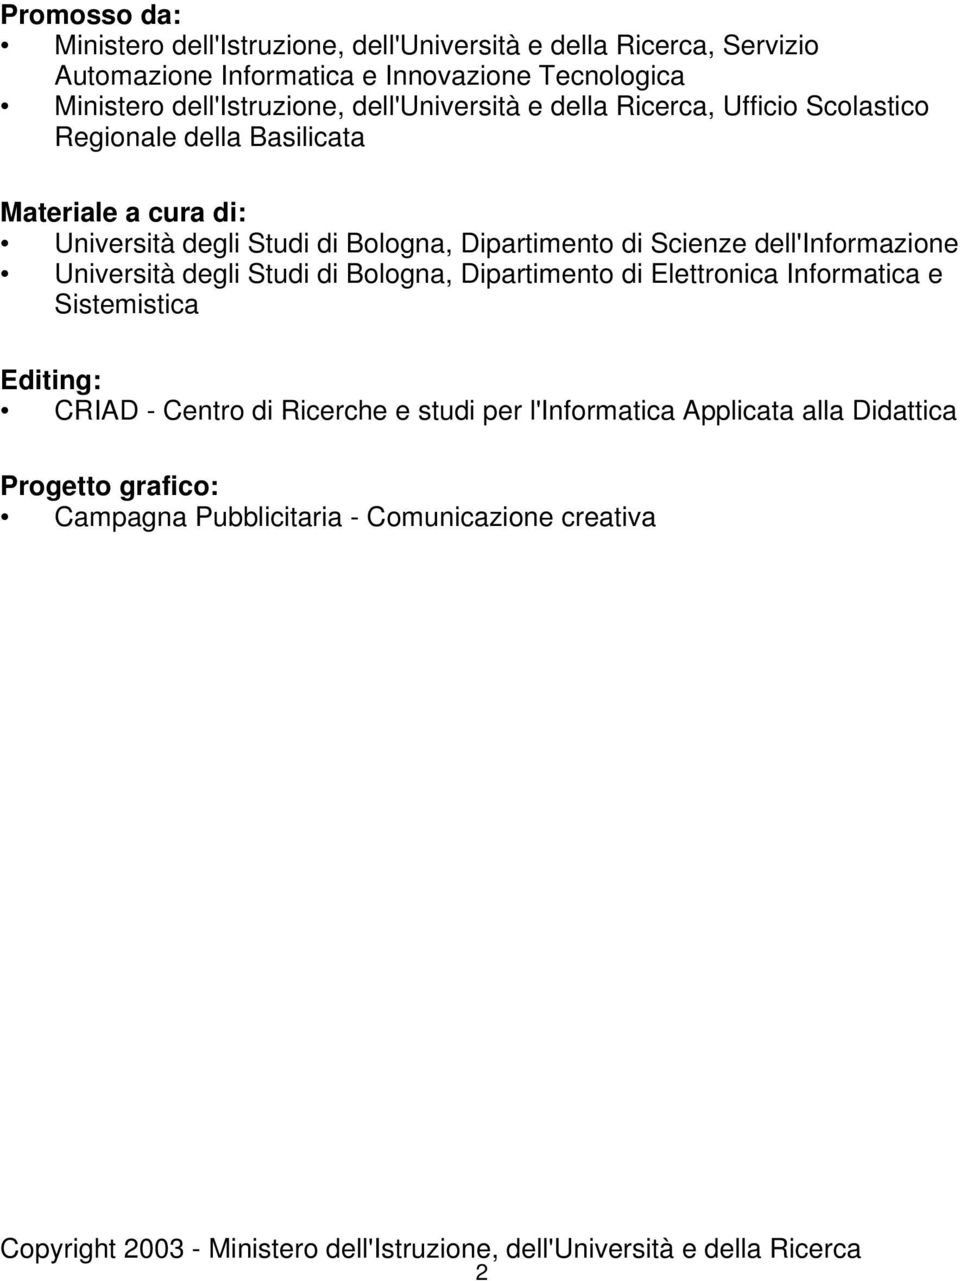 dell'informazione Università degli Studi di Bologna, Dipartimento di Elettronica Informatica e Sistemistica Editing: CRIAD - Centro di Ricerche e studi per